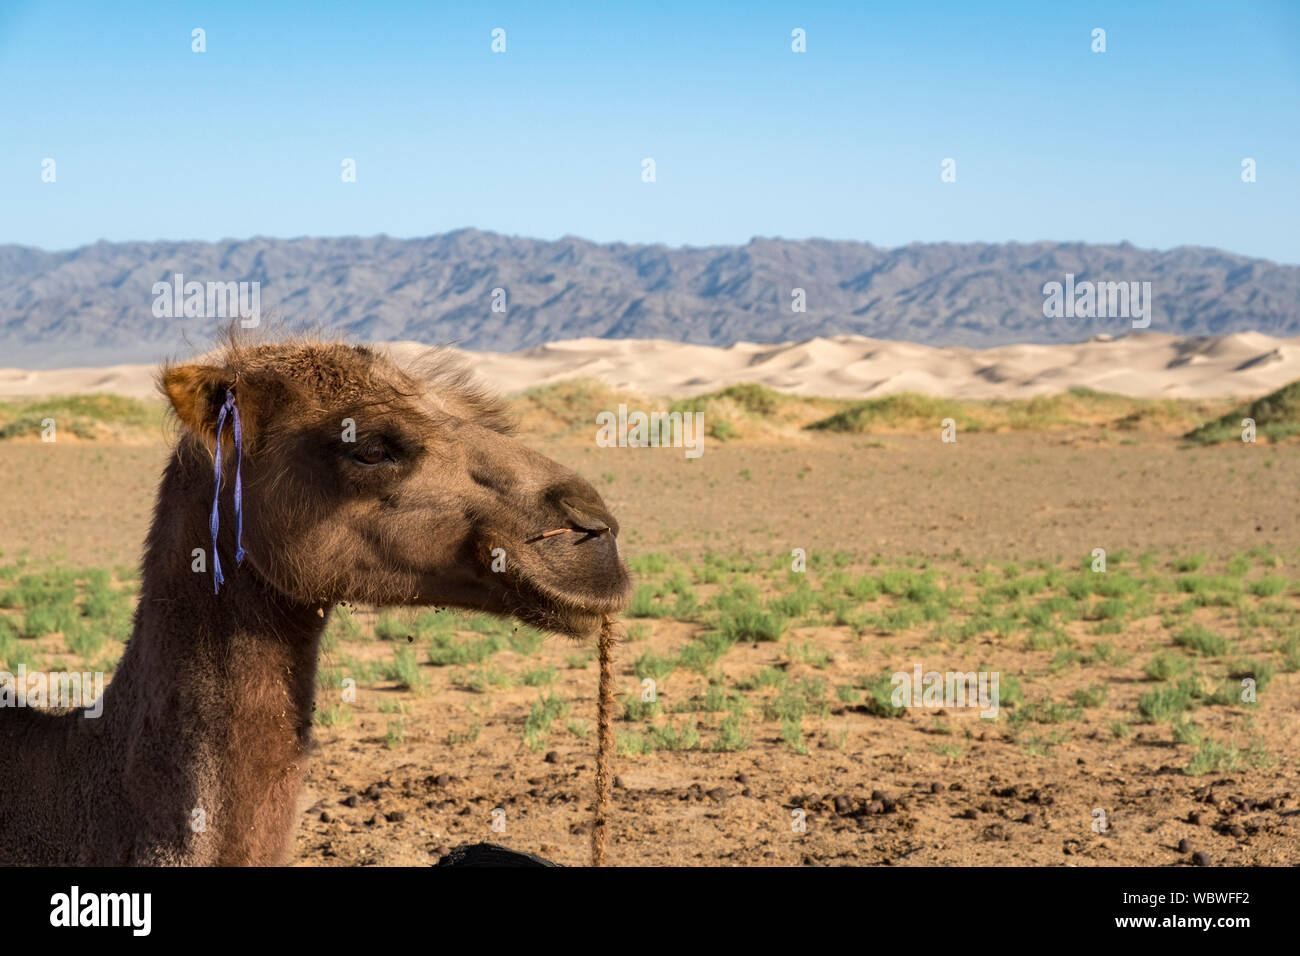 Die baktrischen Kamel ist ein native auf den Steppen Zentralasiens. Im Gegensatz zu den Single-Humped dromedar Kamel, Bactrian Camel hat zwei Höcker auf i Stockfoto